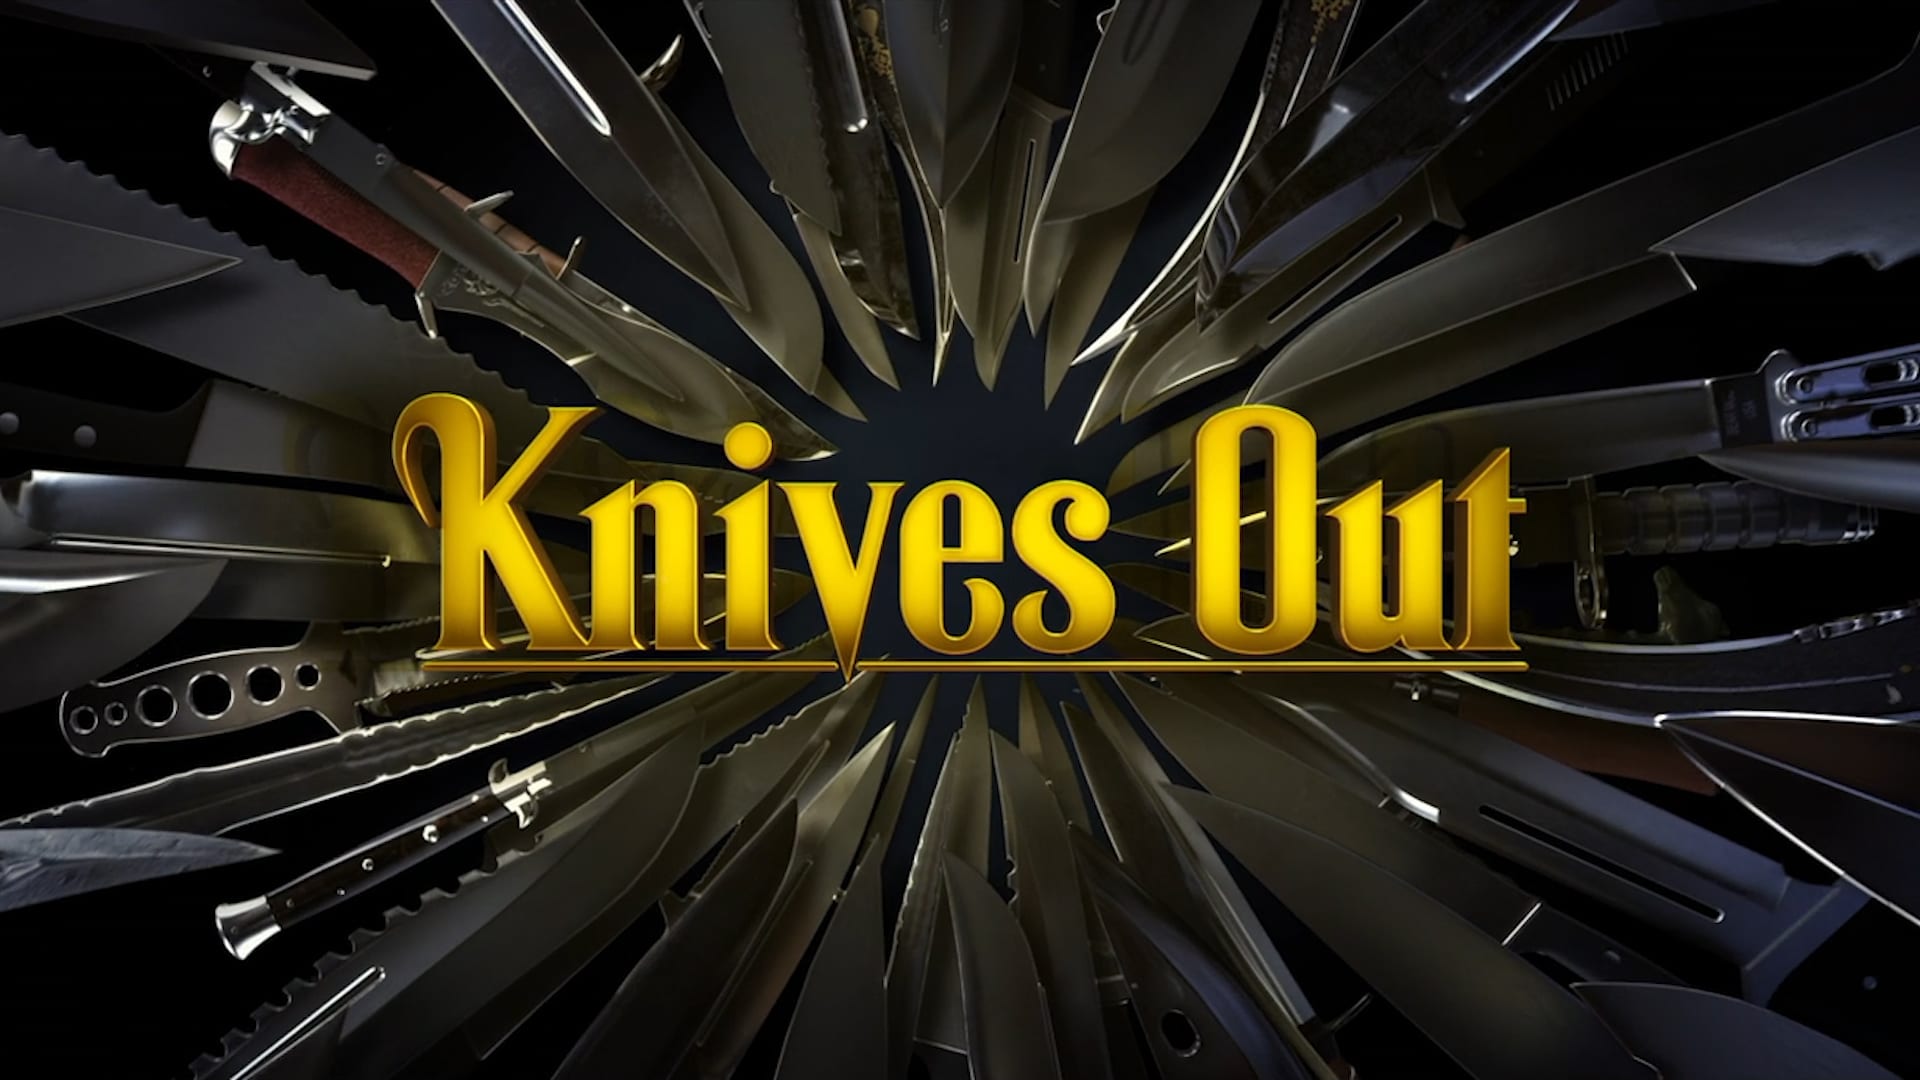 Достать ножи год. Достать ножи / Knives out (2019). Достать ножи заставка.